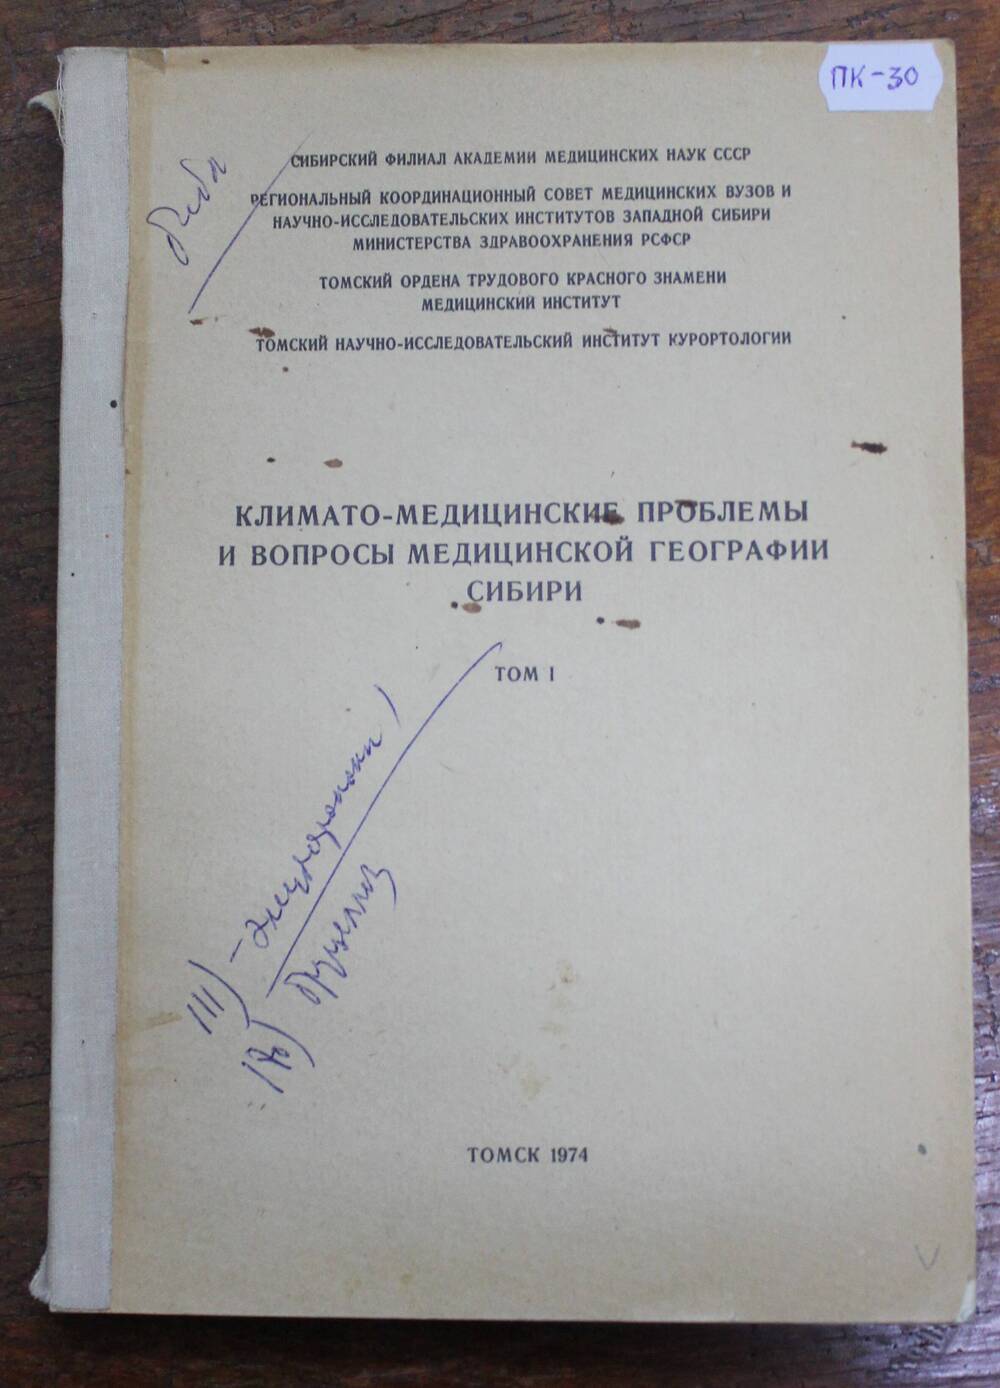 Книга Климато - медицинские проблемы и вопросы медицинской географии Сибири, г. Томск, 1974г.